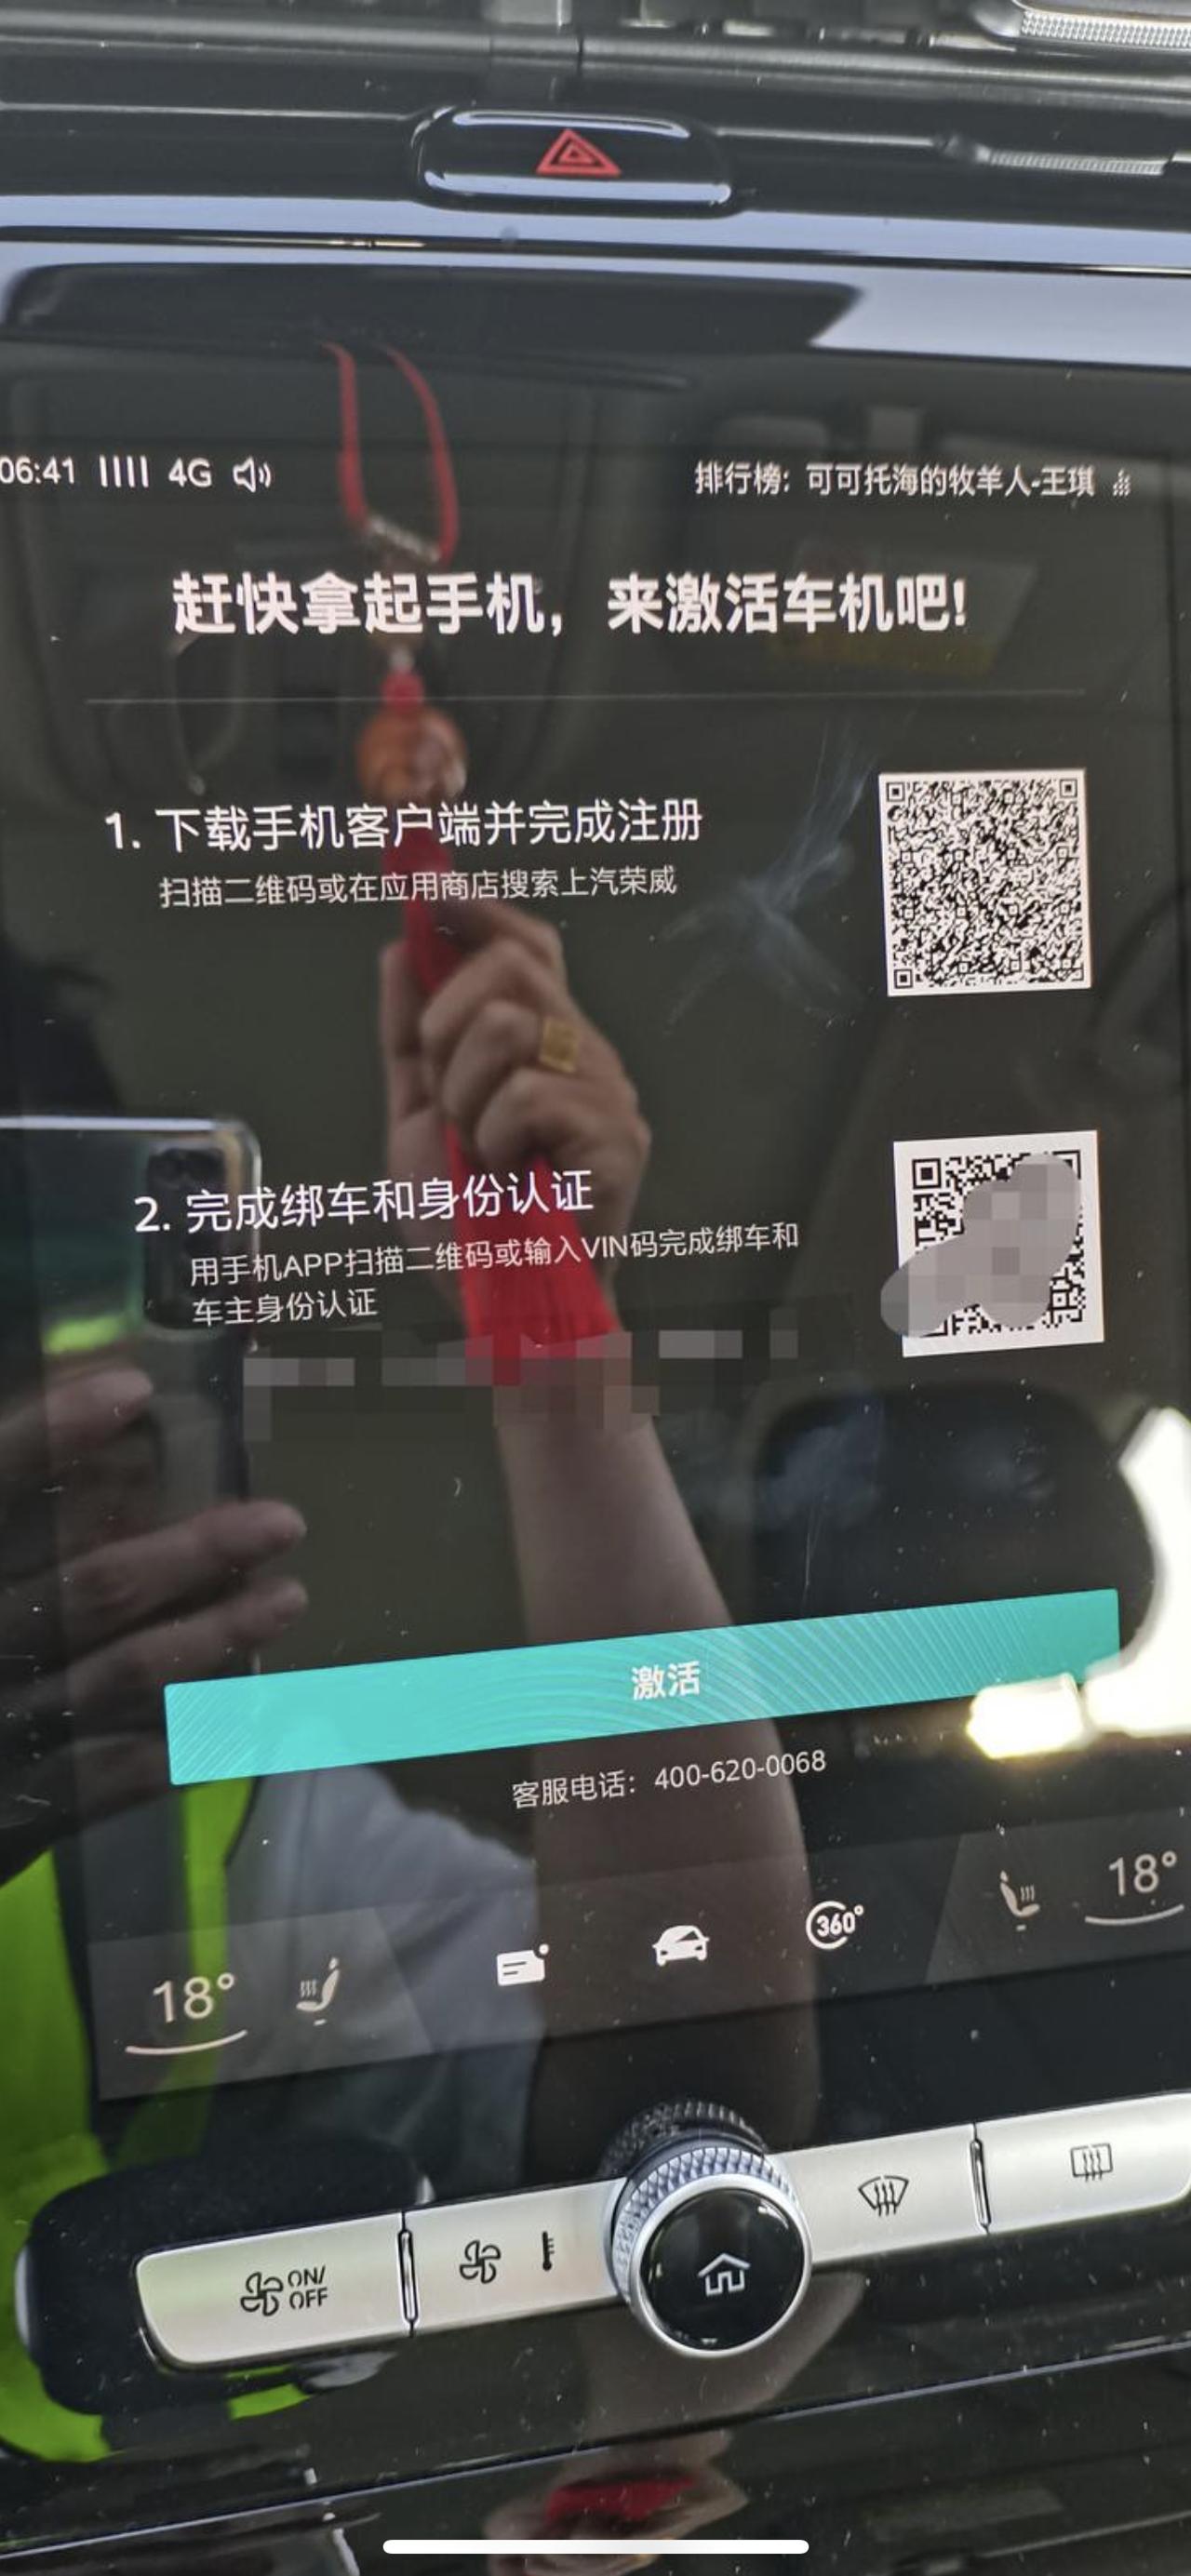 荣威RX5 MAX 车机已经激活用了快两年了，前两天突然手机获取不知道车辆信息，车机启动就显示这个界面，手机app上